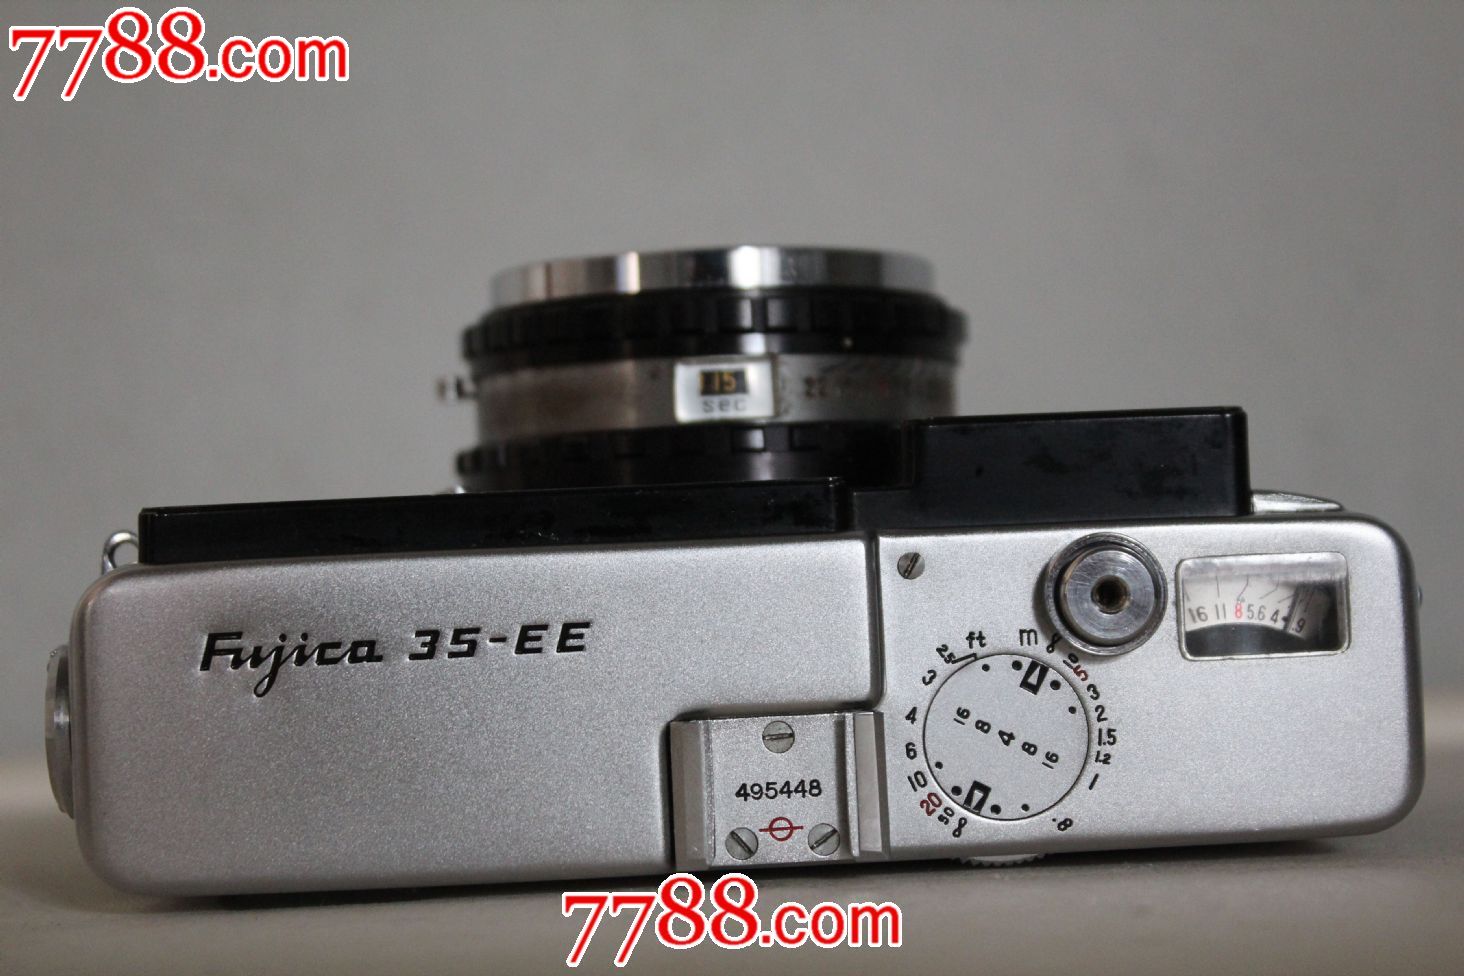 富士卡35-EE傍轴相机,傻瓜机\/胶片相机,平视胶